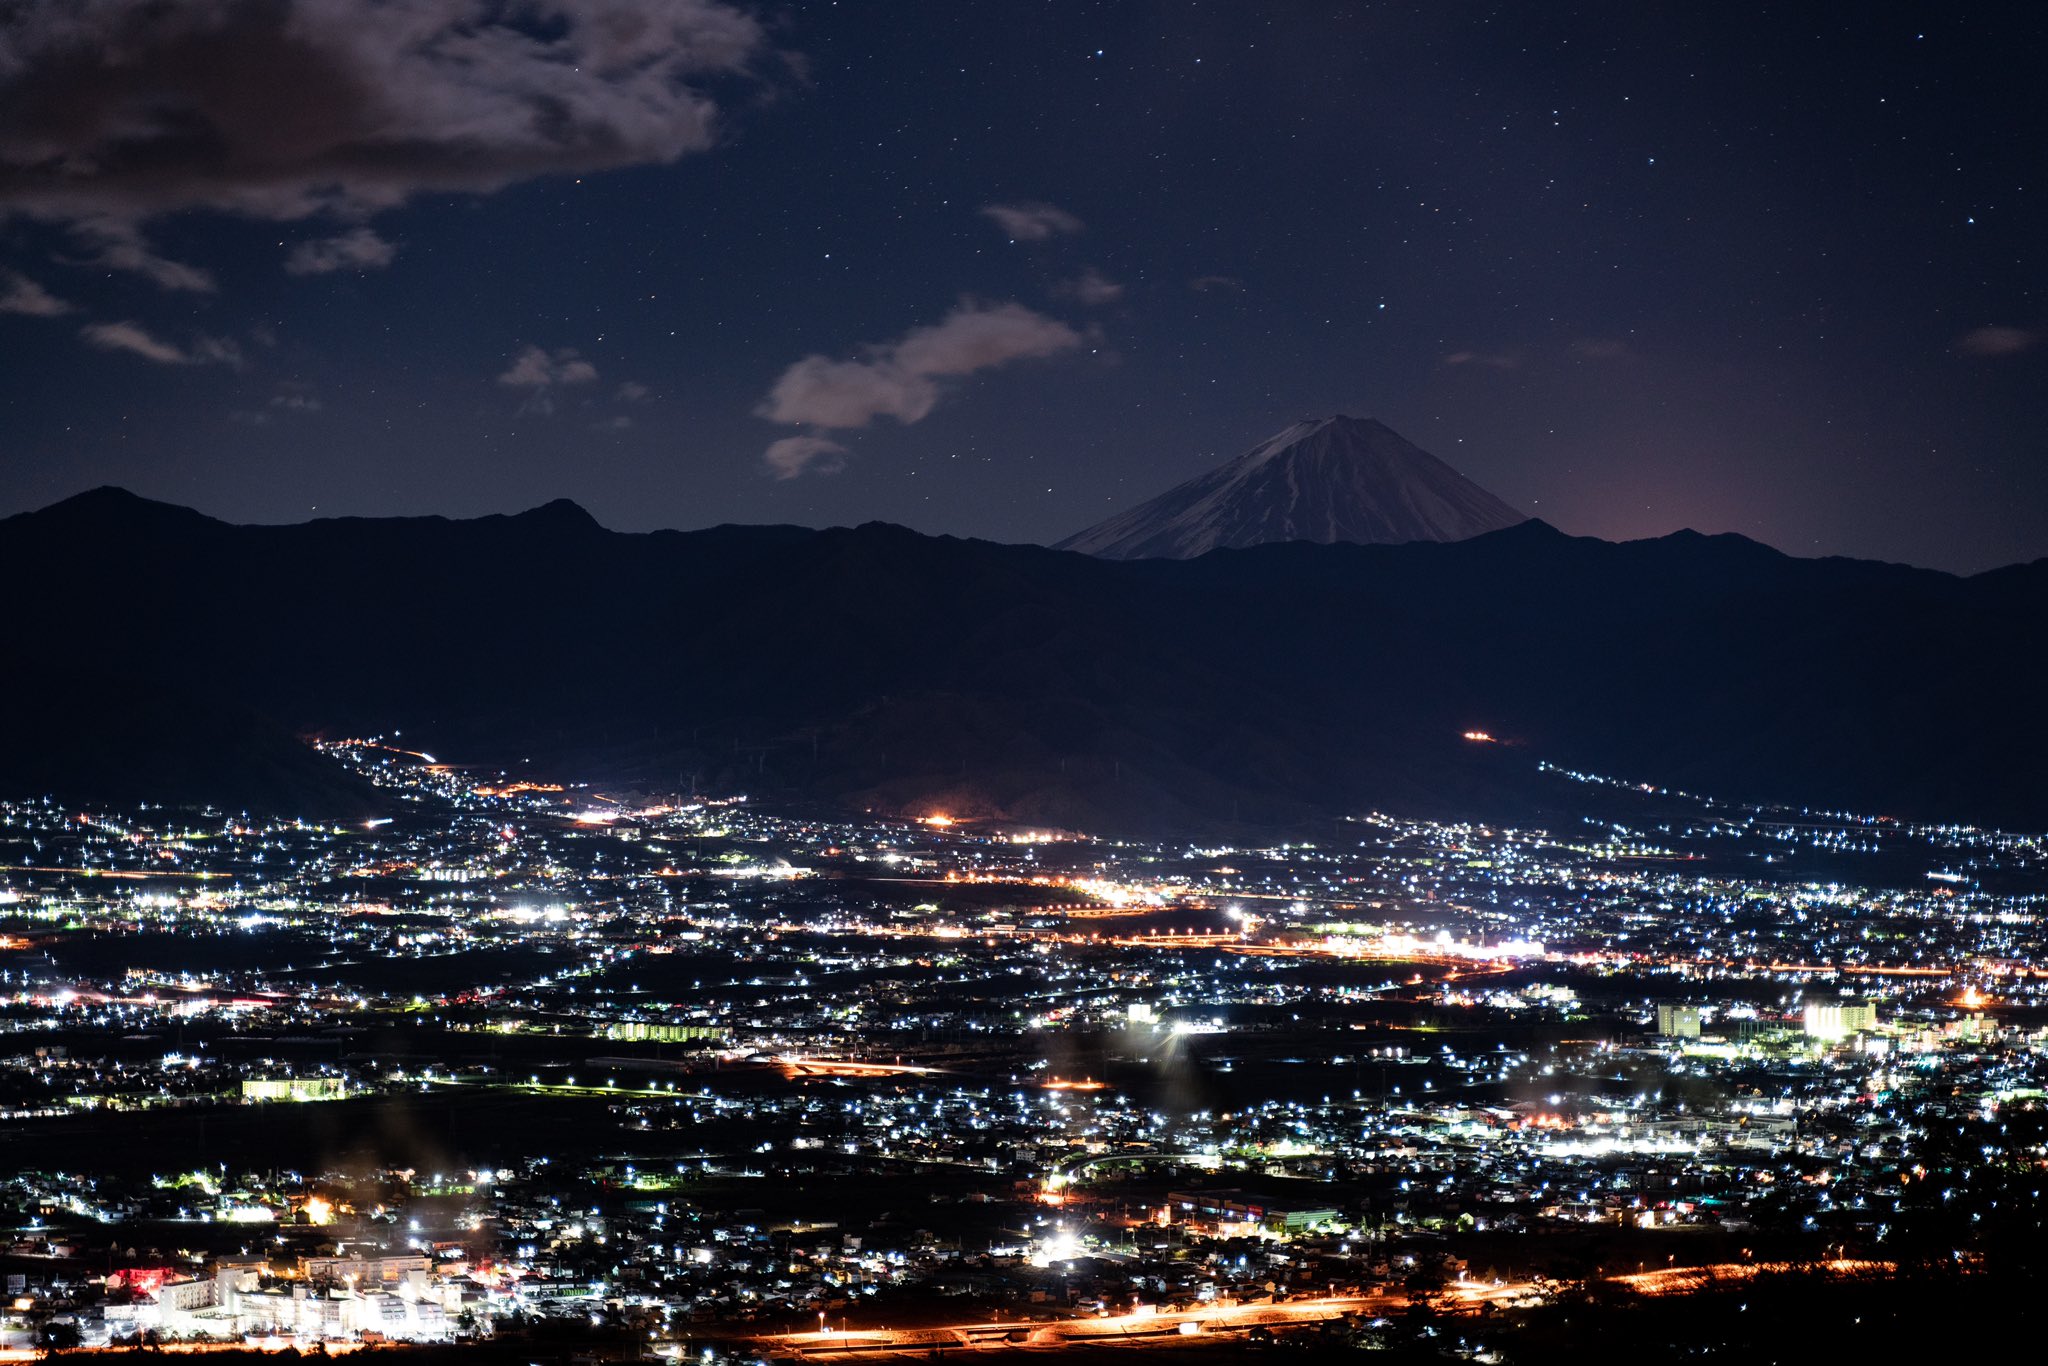 ほぼ写真 甲府盆地の夜景と富士山と星空 富士山の右側赤いのは富士宮あたりの街灯りかな 山梨県 山梨市 ほったらかし温泉 夜景 星空 riii riii Sonyalpha T Co Woevhonc97 Twitter